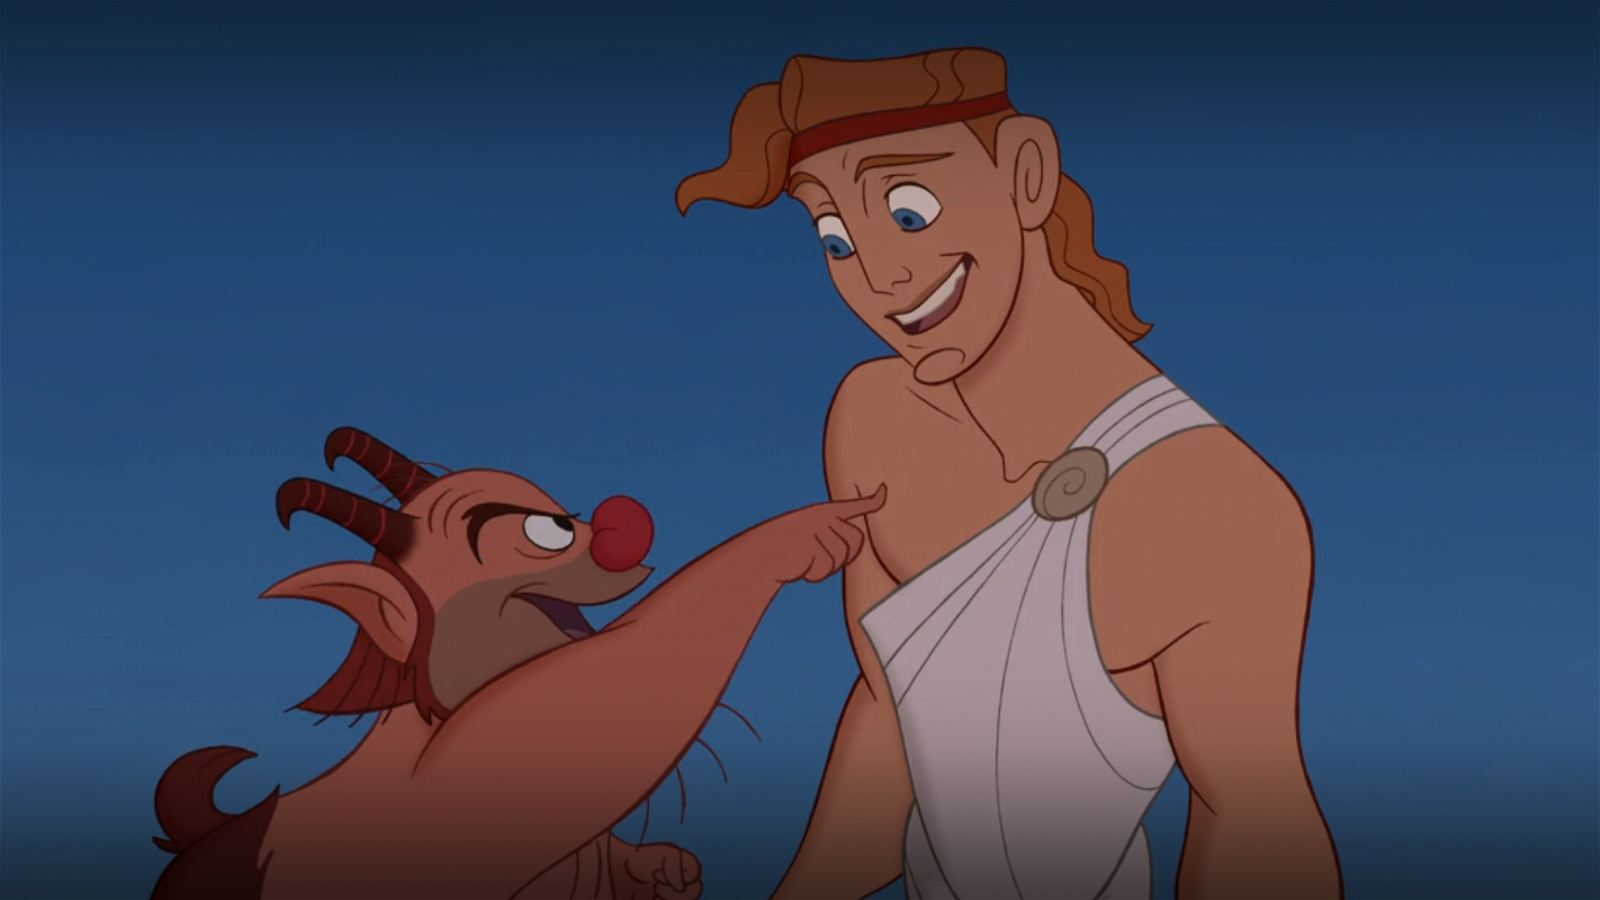 Phil and Hercules